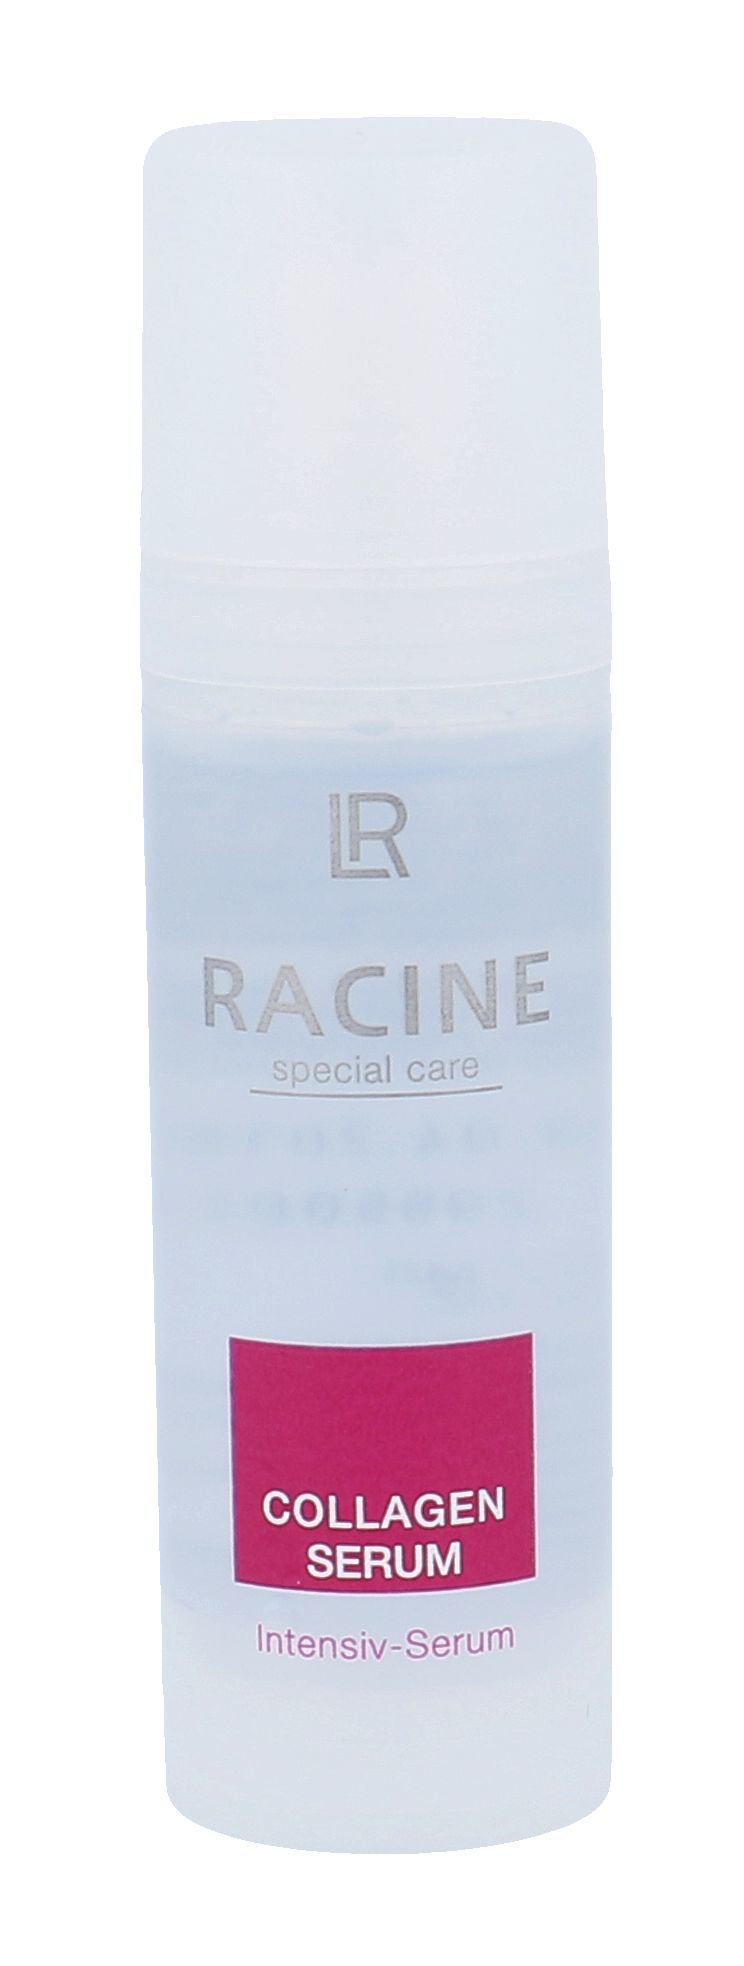 LR Racine Special Care Collagen Serum